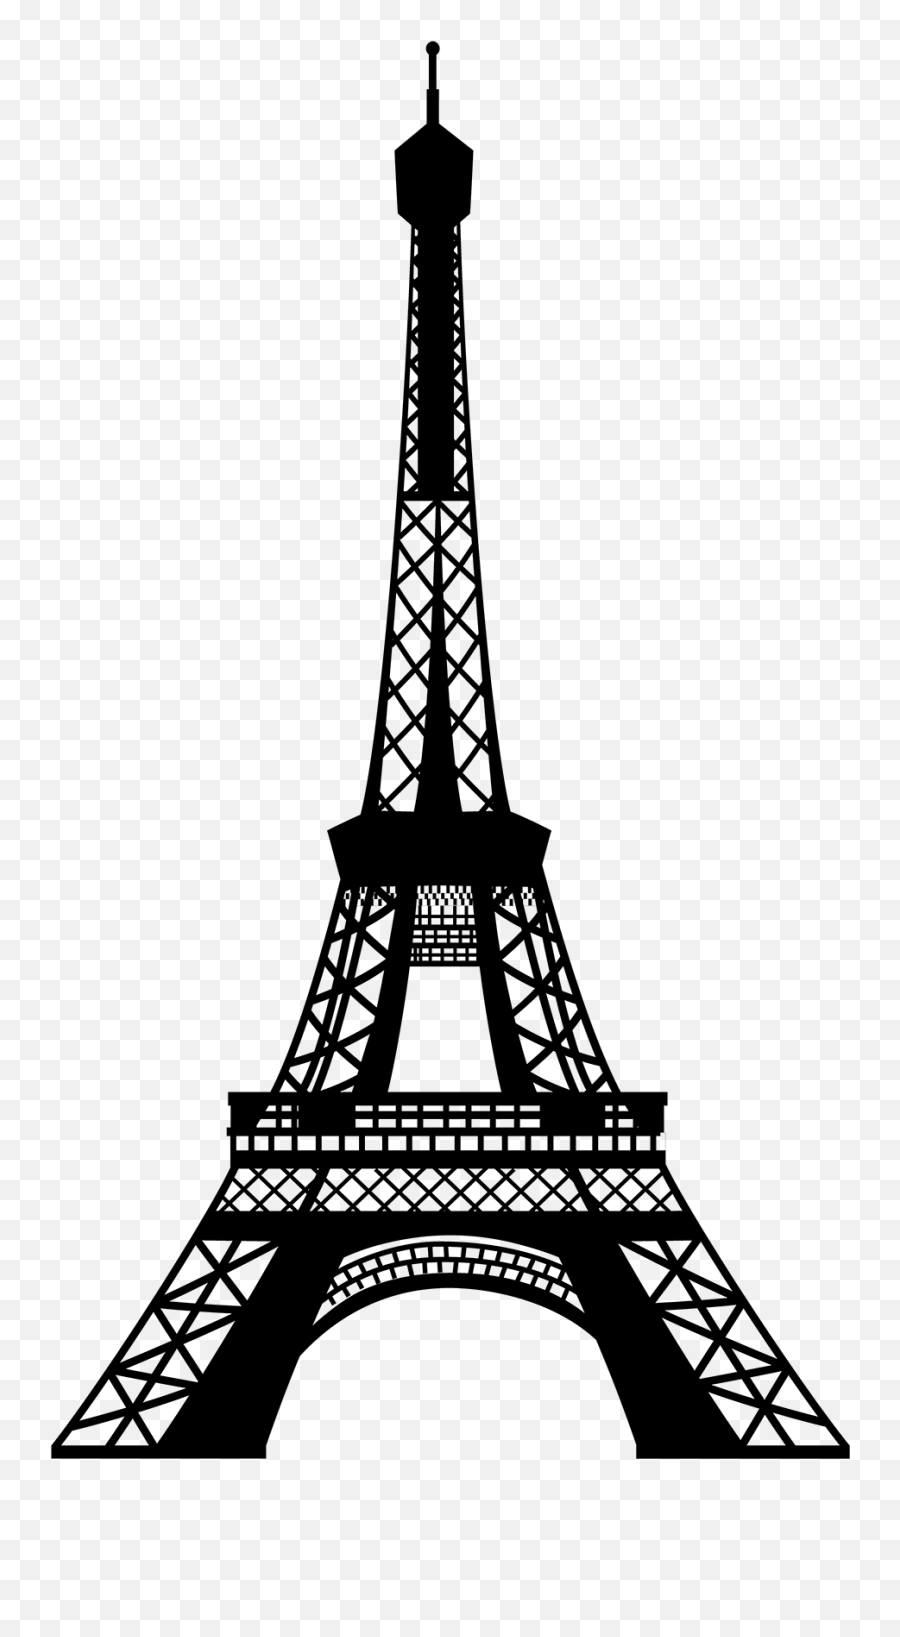 French Flag Eiffel Tower Emoji - Transparent Background Eiffel Tower Clip Art,French Flag Emoji